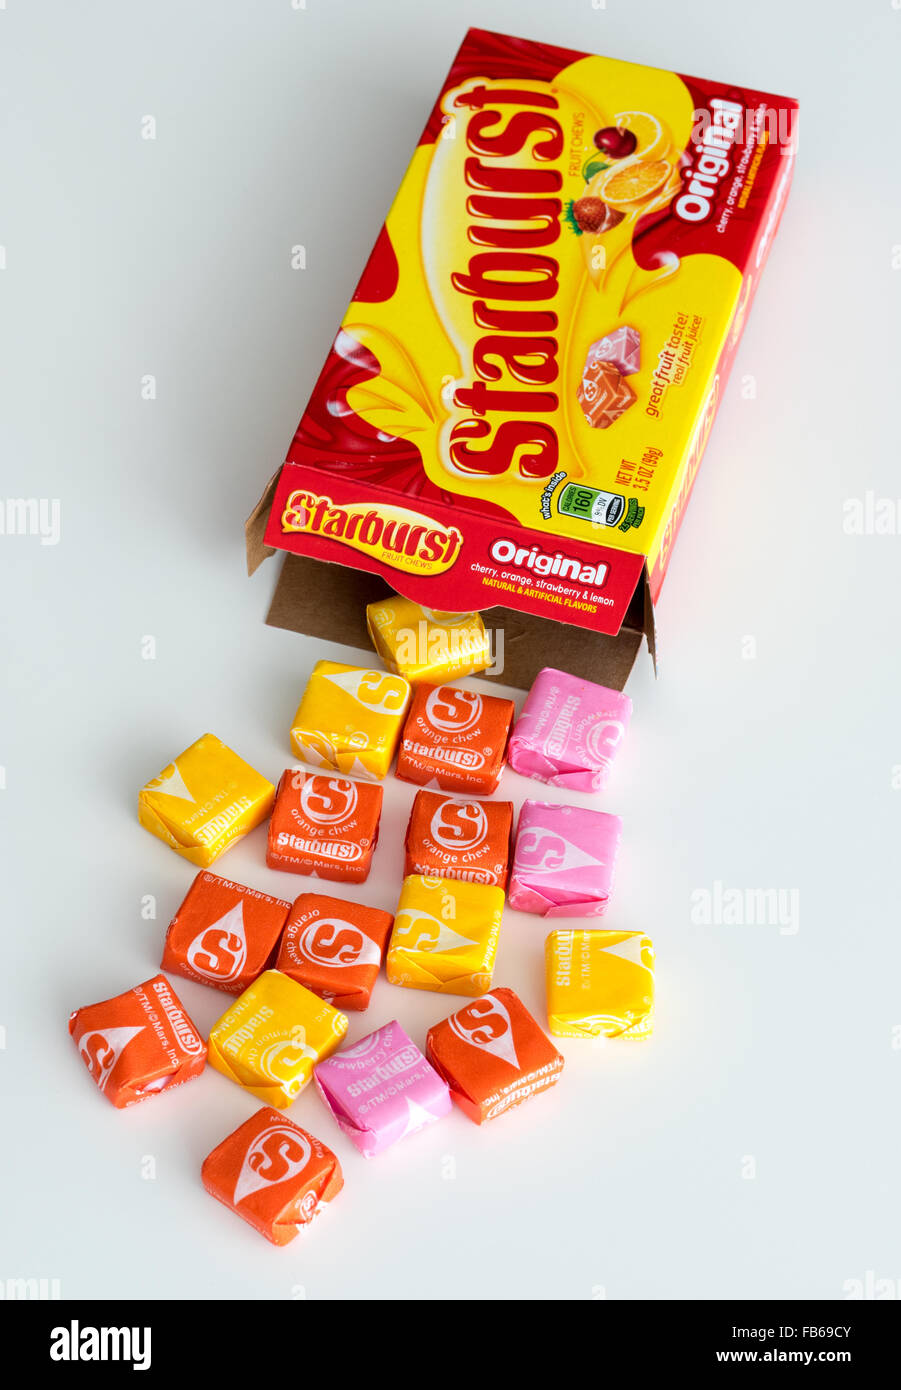 Una scatola di caramelle Starburst, aromatizzata alla frutta candy fabbricati dalla società Wrigley. Foto Stock